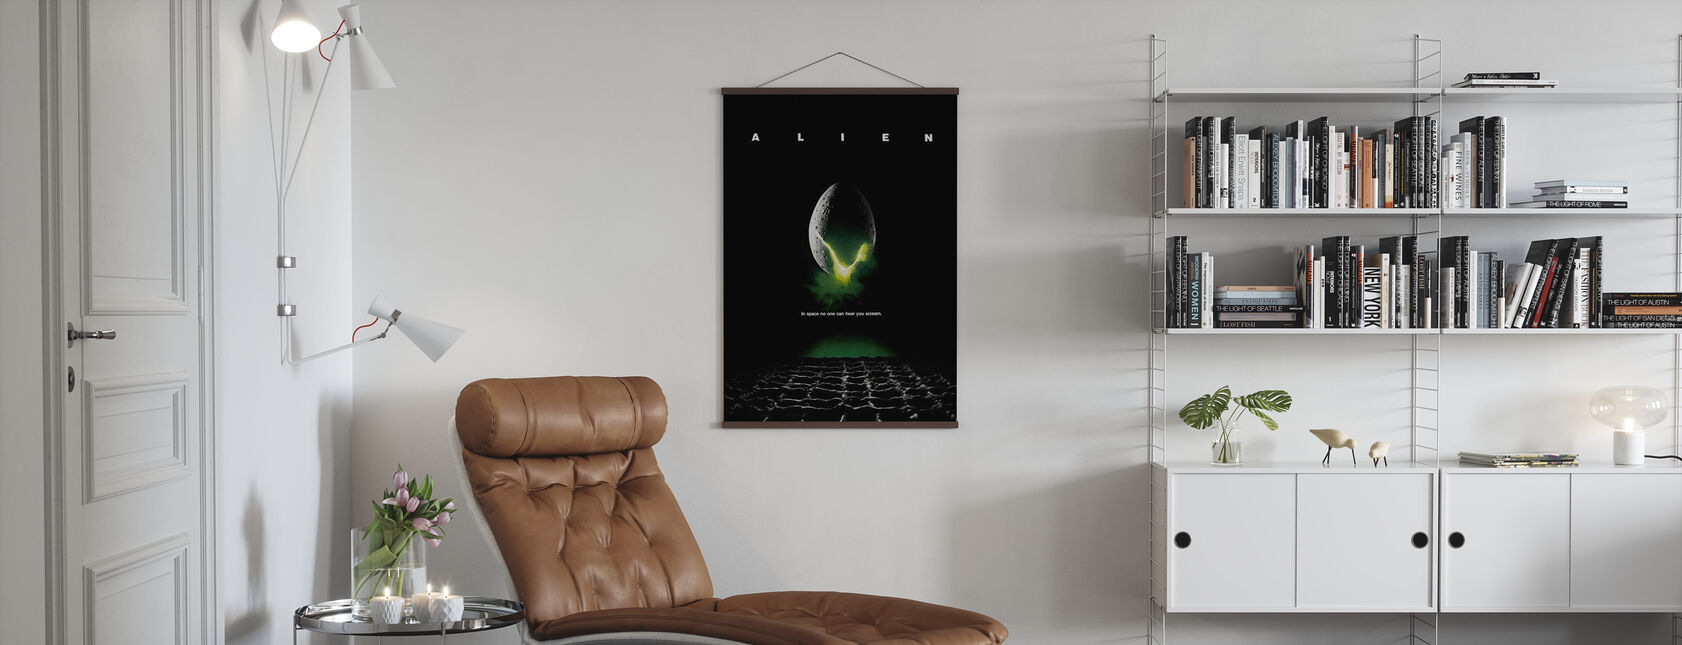 Alien - Poster - Living Room